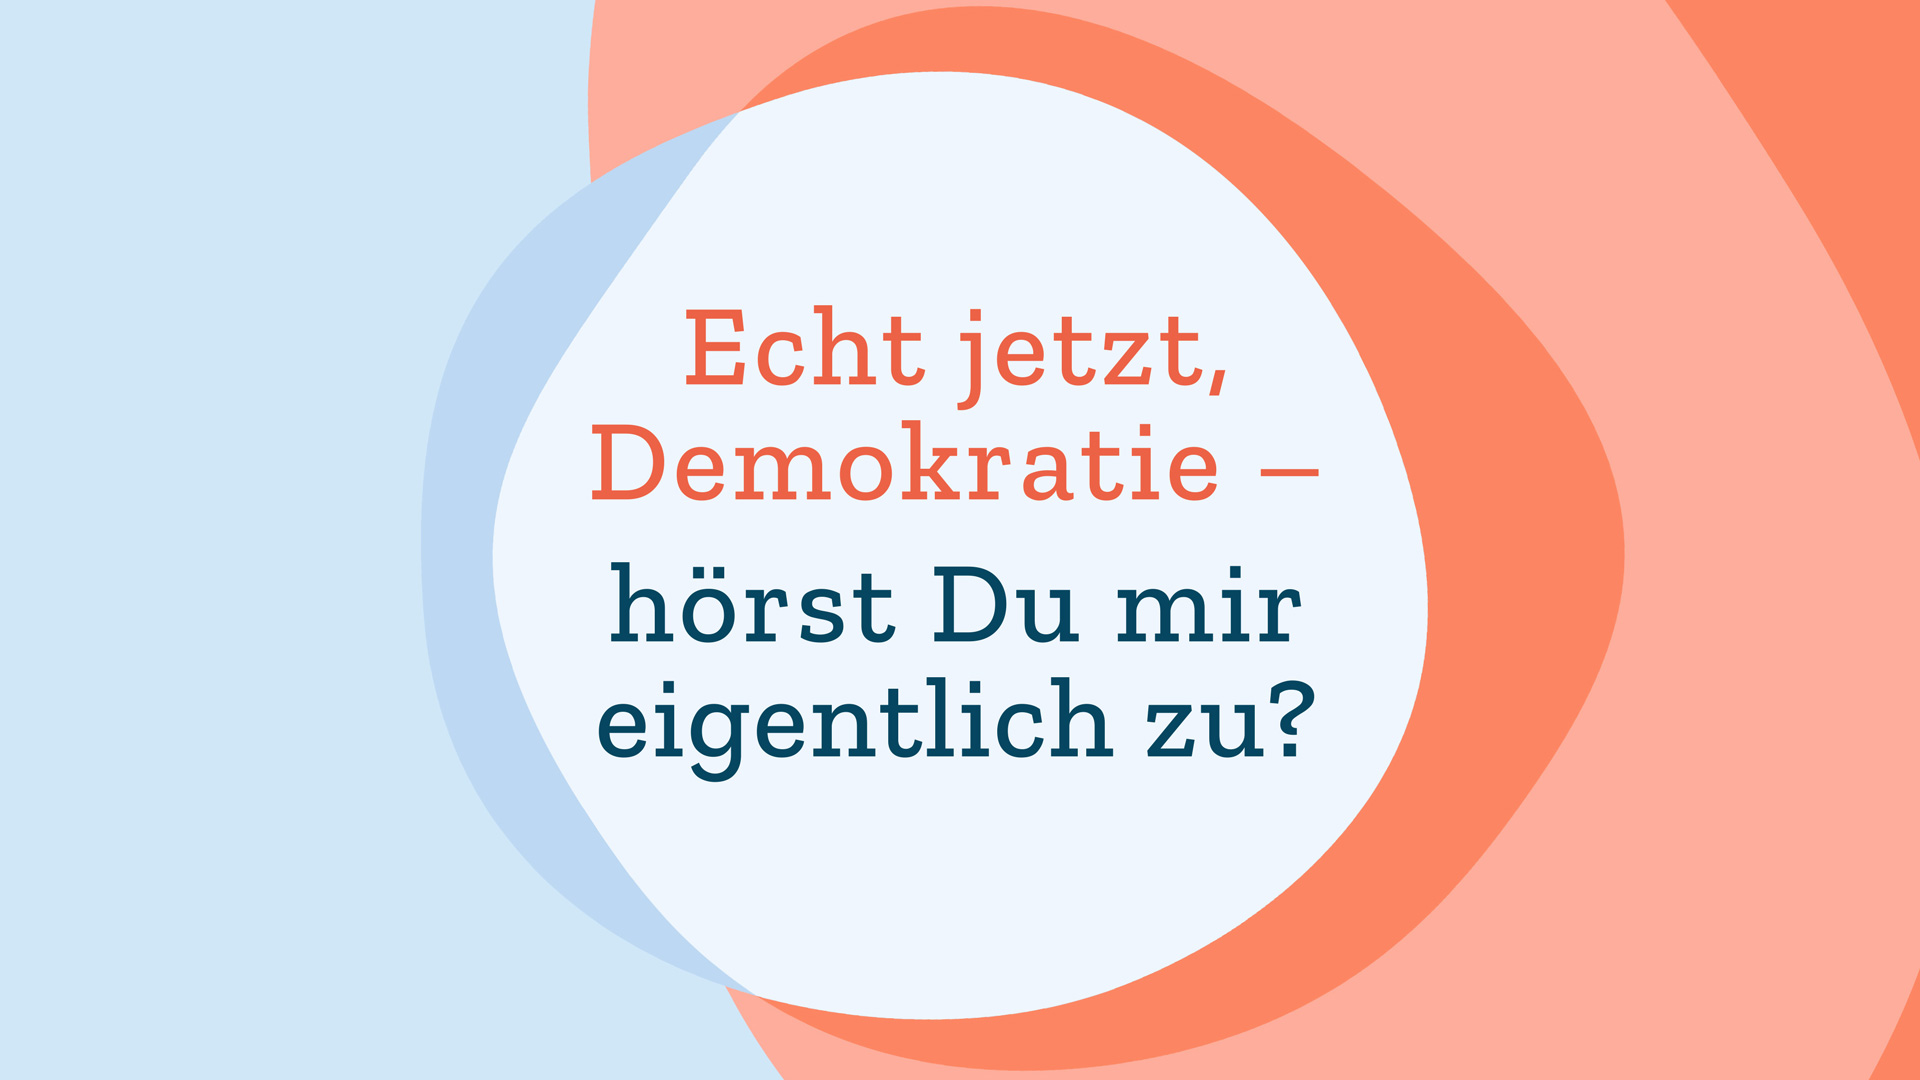 Titelbild mit Text: „Echt jetzt, Demokratie – hörst Du mir eigentlich zu?“